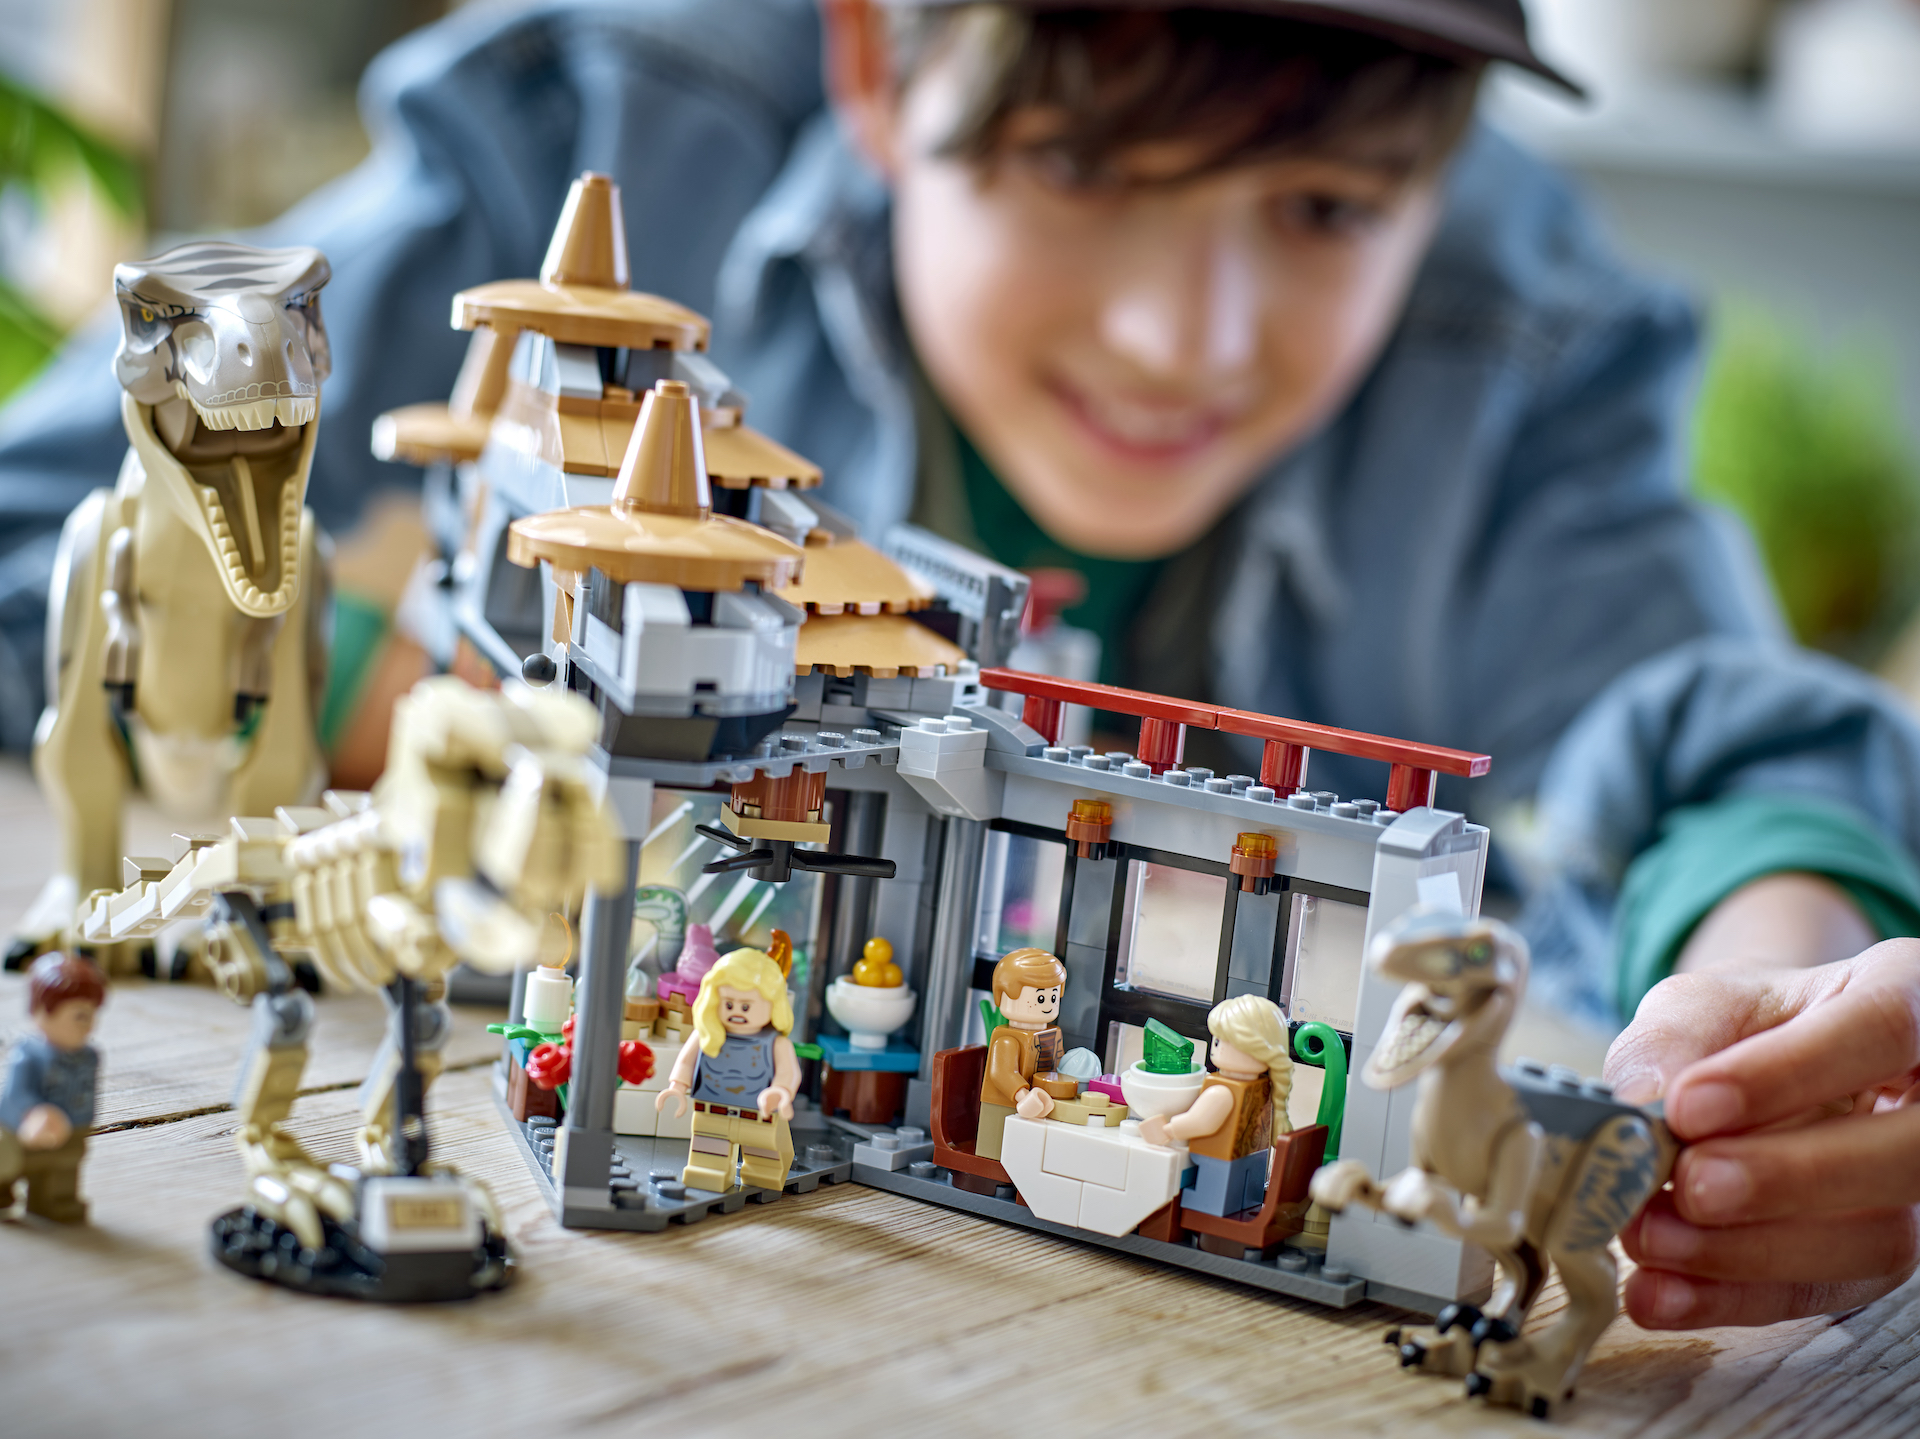 LEGO Jurassic World - Centro de Visitantes: Ataque de TRex e